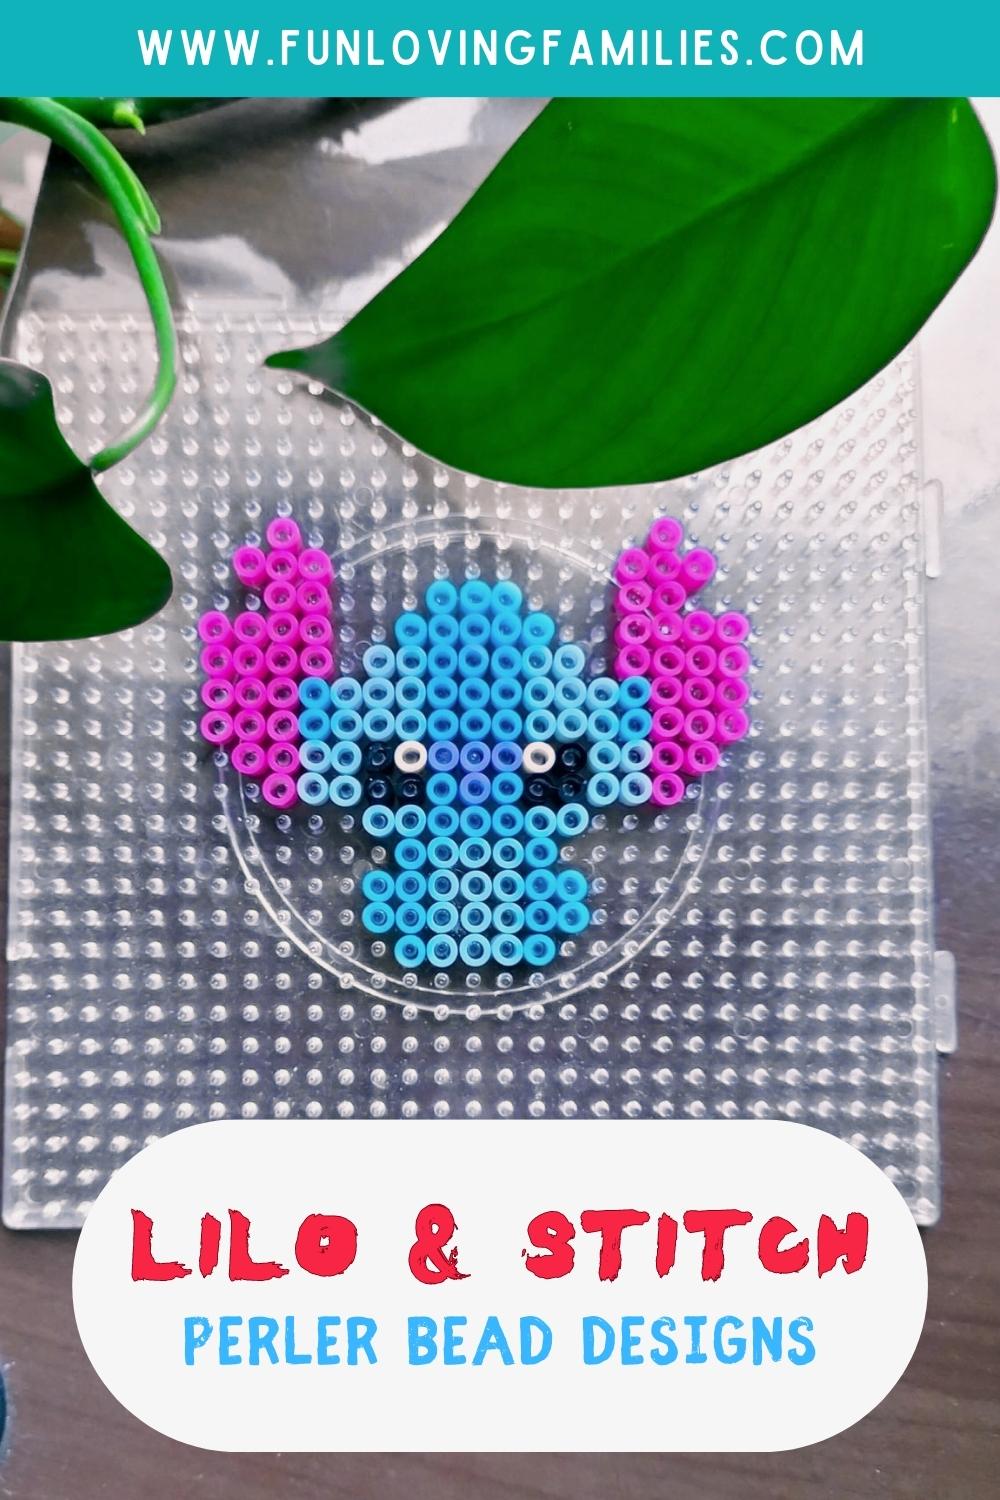 Lilo & Stitch Perler Bead Patterns pin image